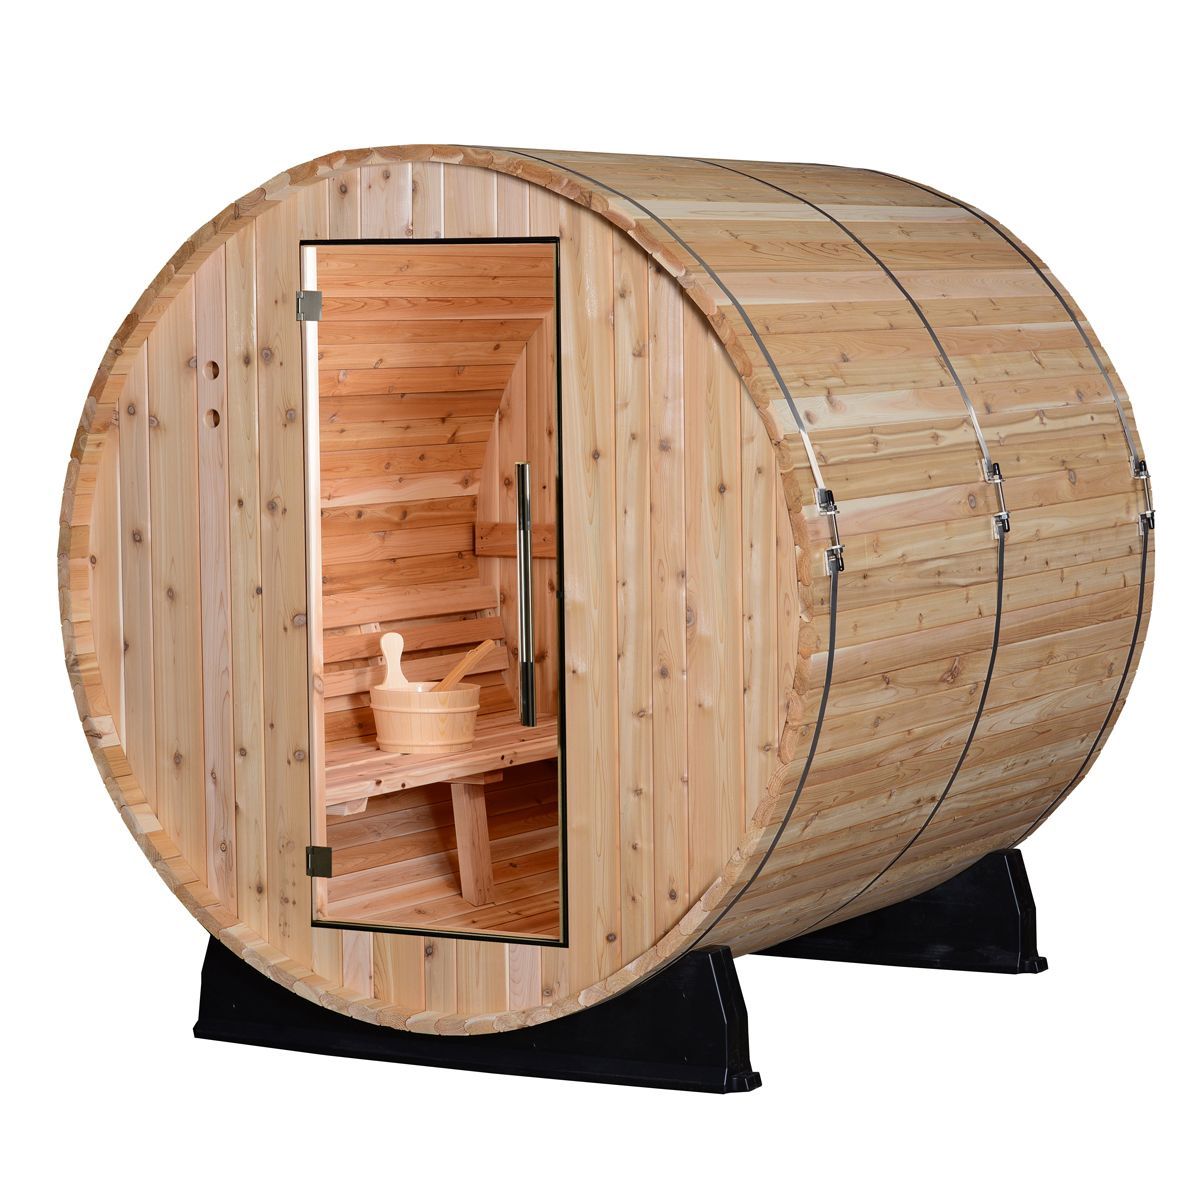 Almost Heaven Saunas Morgan 4-person Barrel Steam Sauna | Costco  6 Foot Barrel Sauna Wiring Diagram    Costco Wholesale